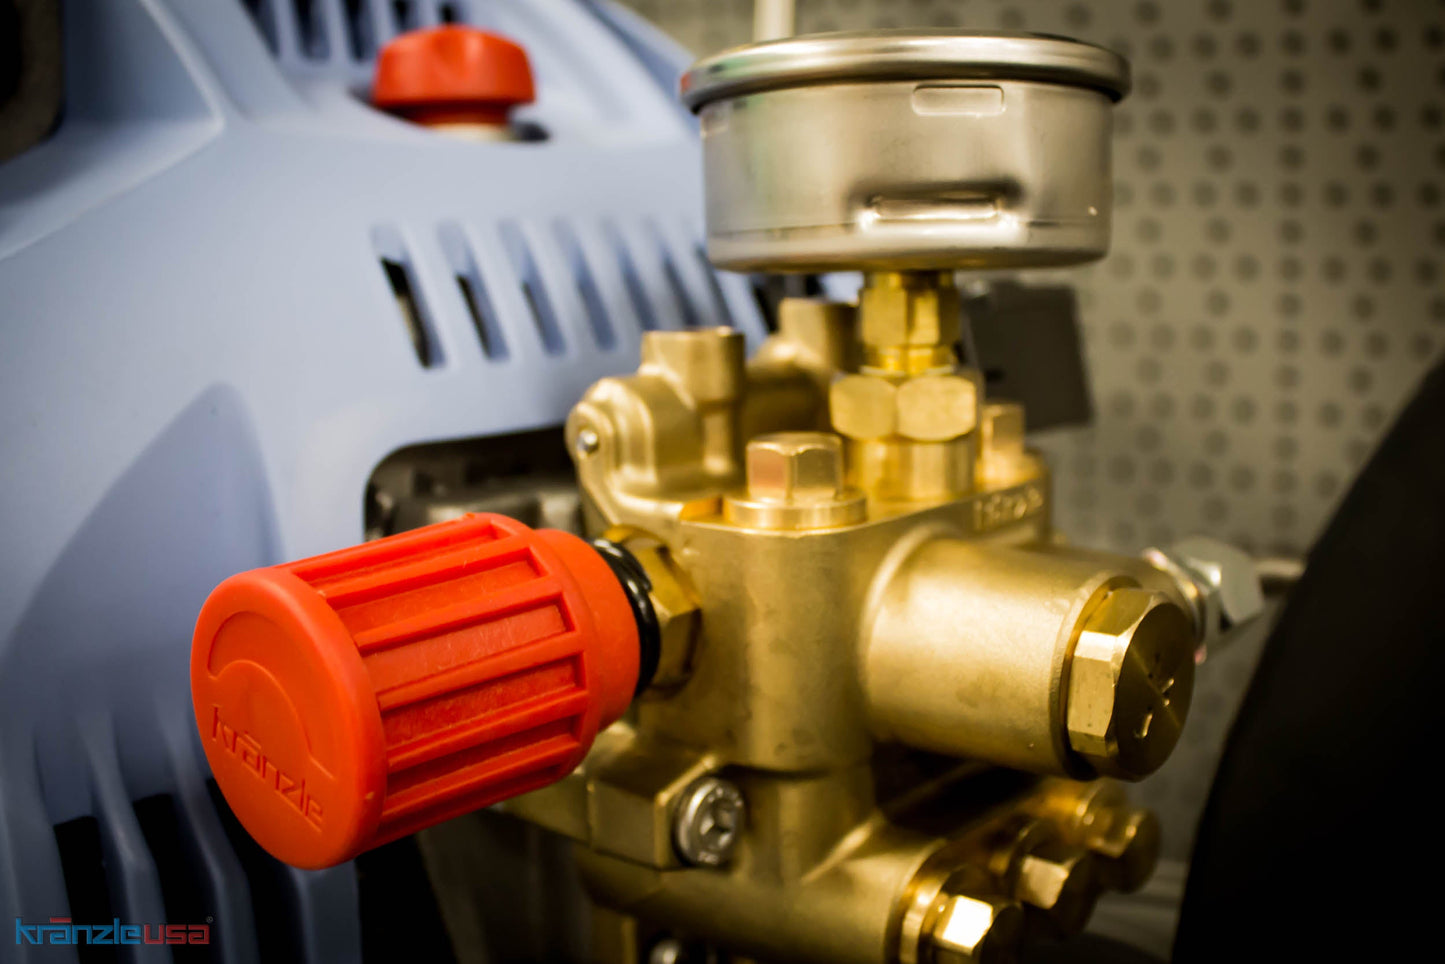 Kranzle 1122TST electric pressure washer unloader valve